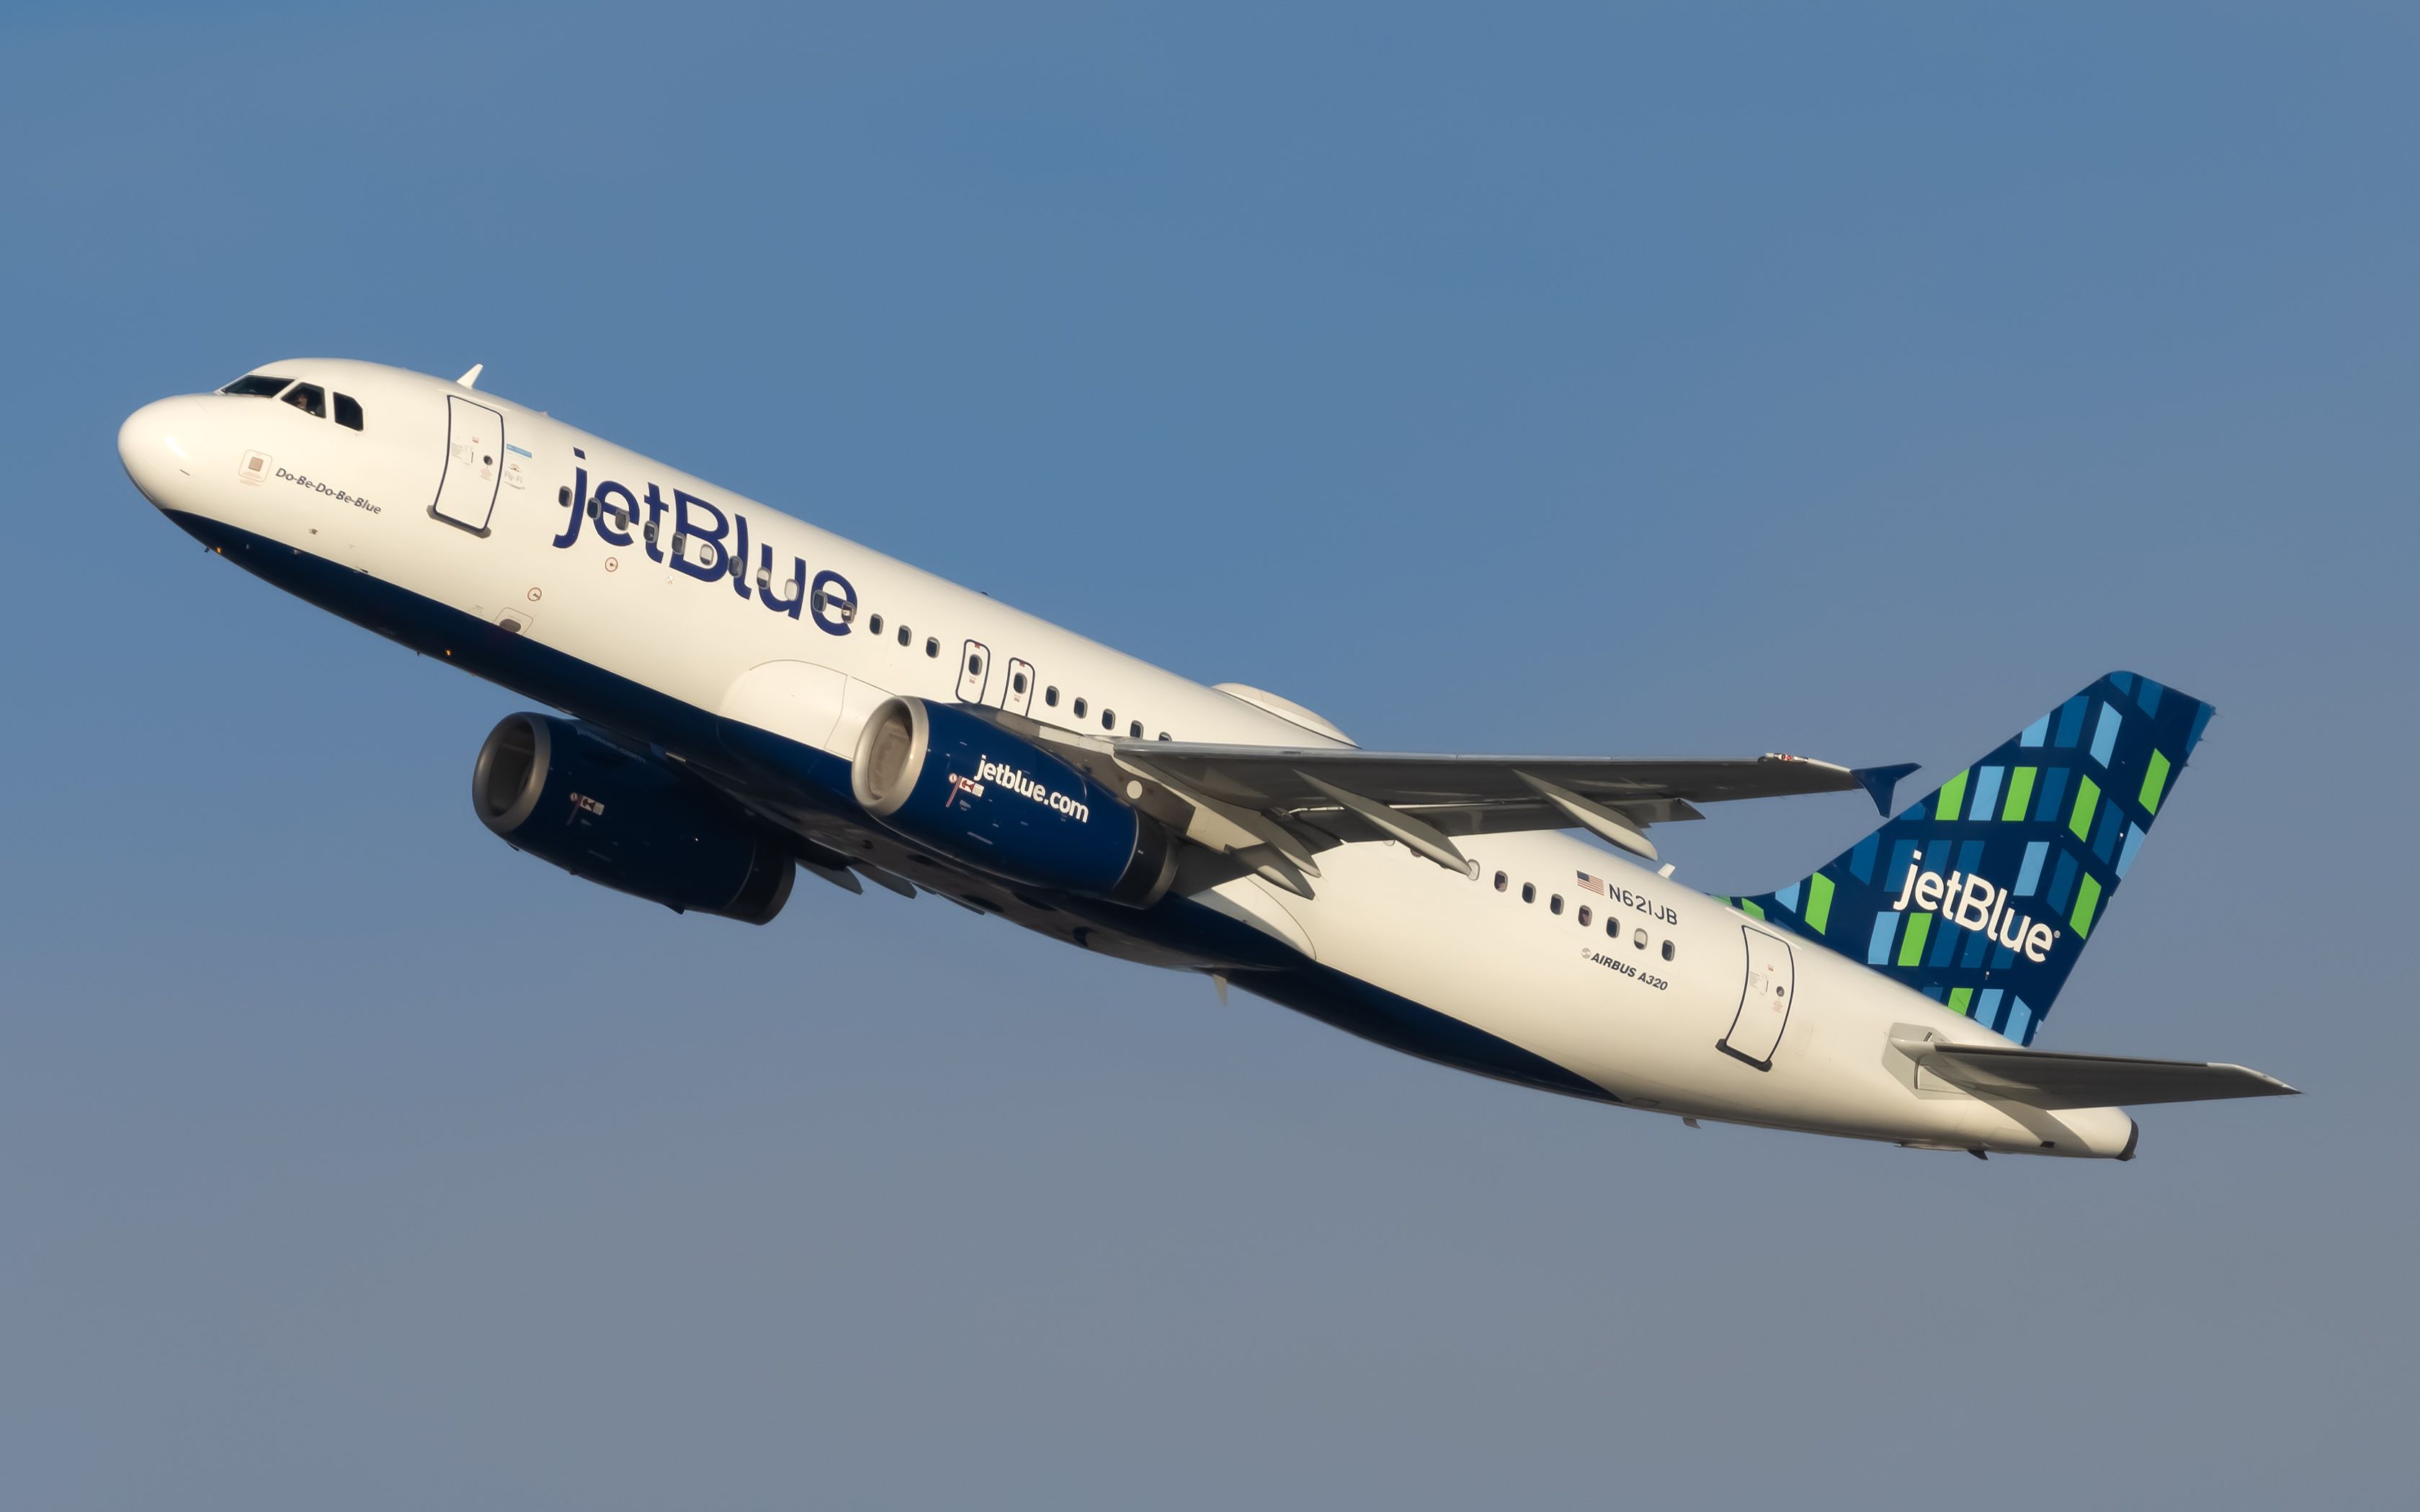 JetBlue A320-200 flying